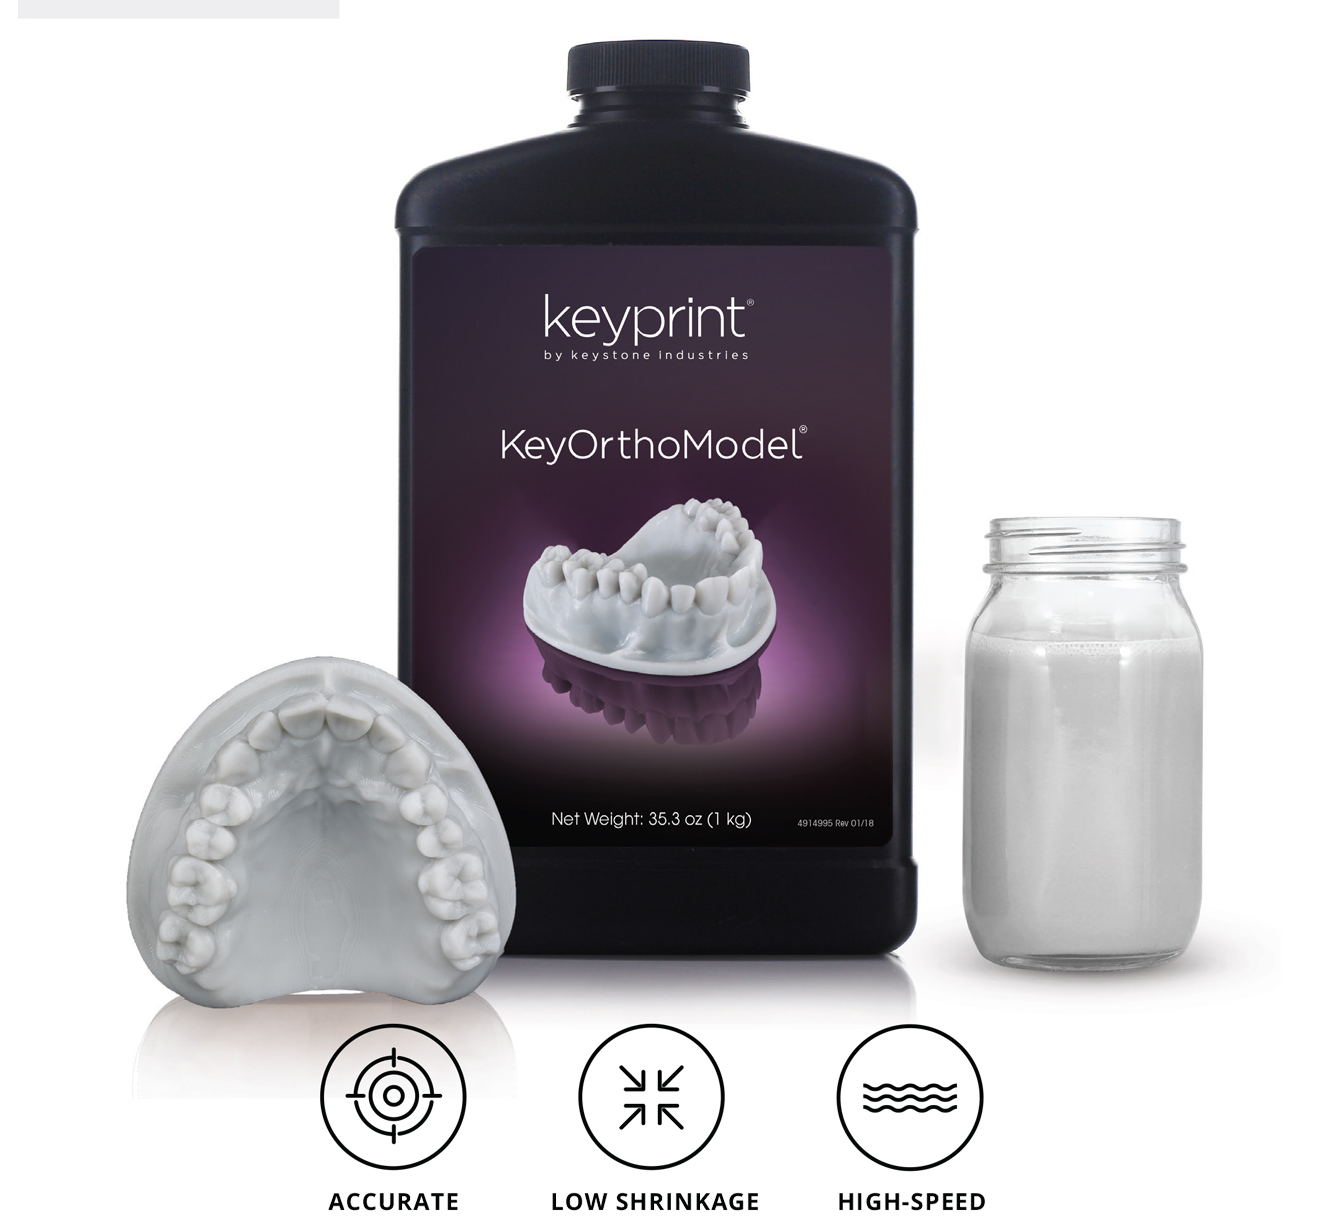 Keystone KeySplint Hard 3D folyadék - Világos ibolya